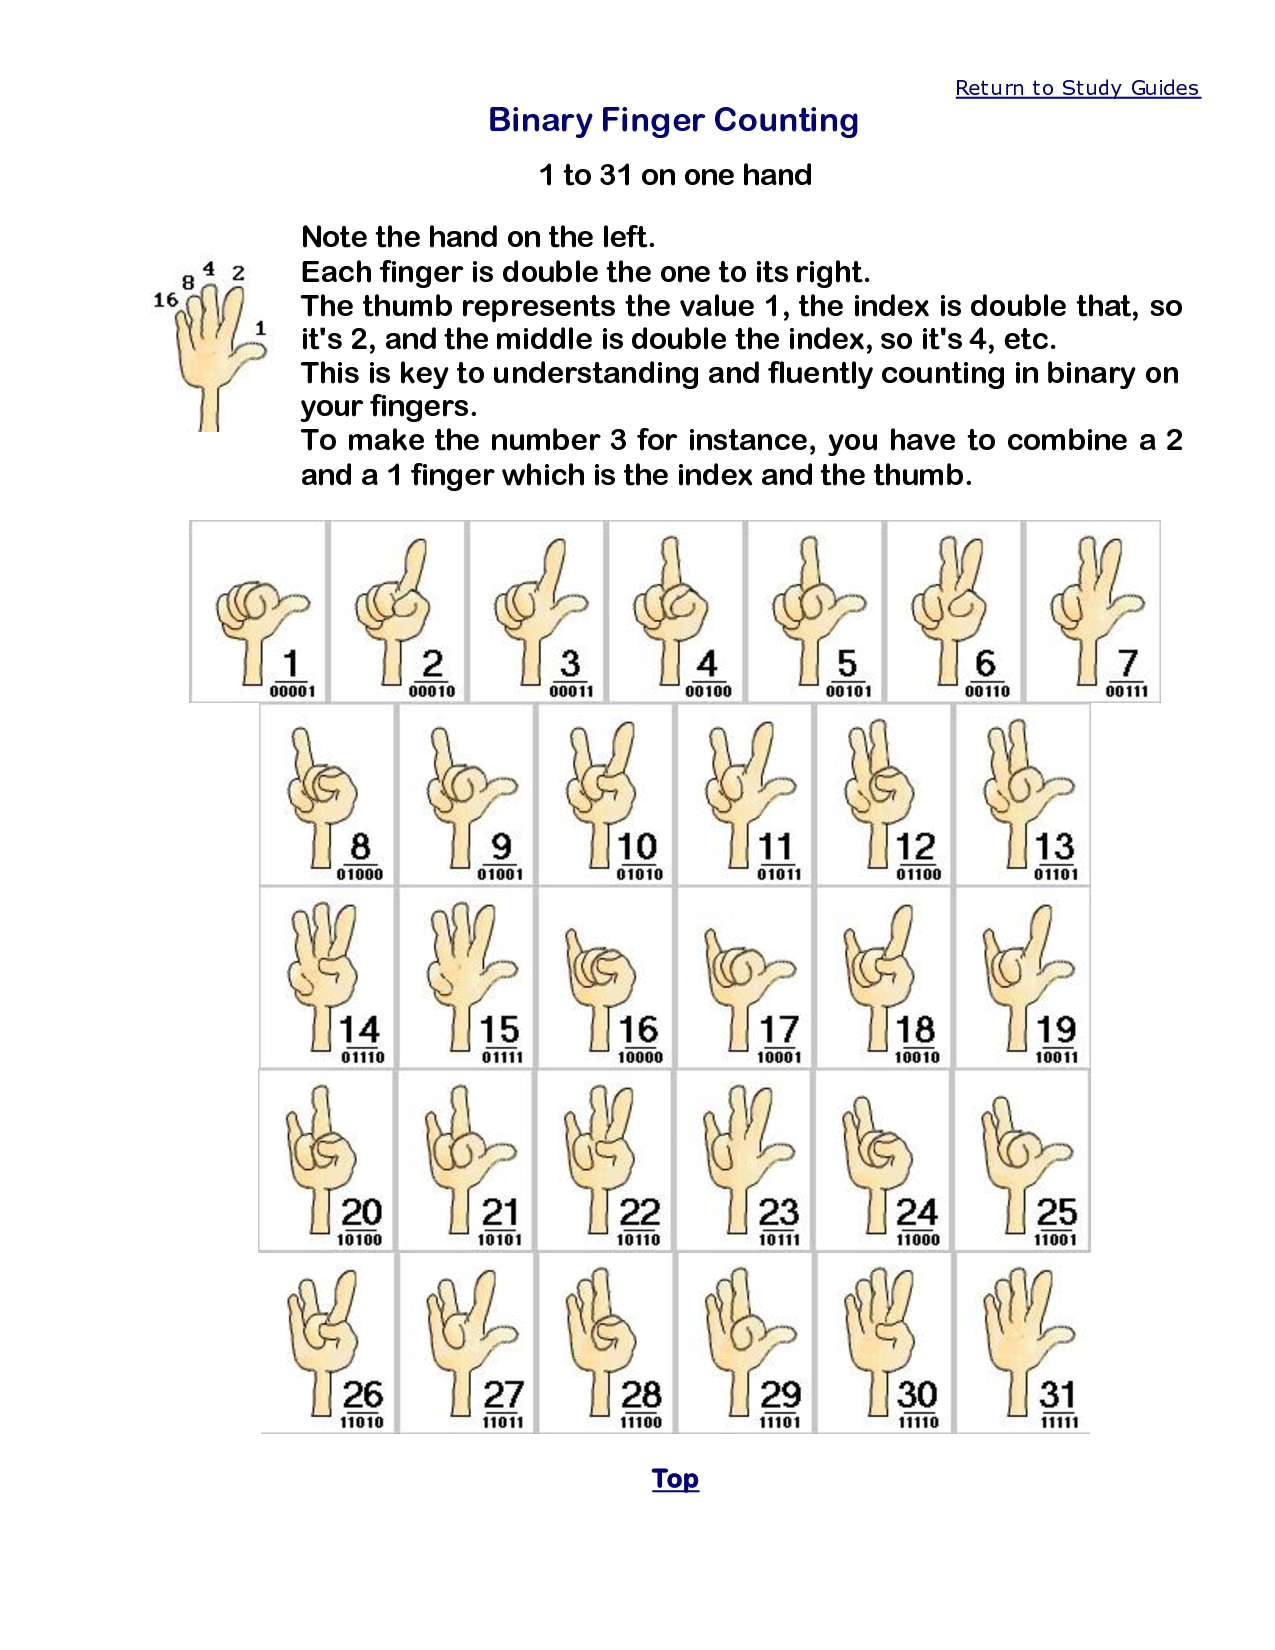 世界各国人民是怎么用手势表示数字的